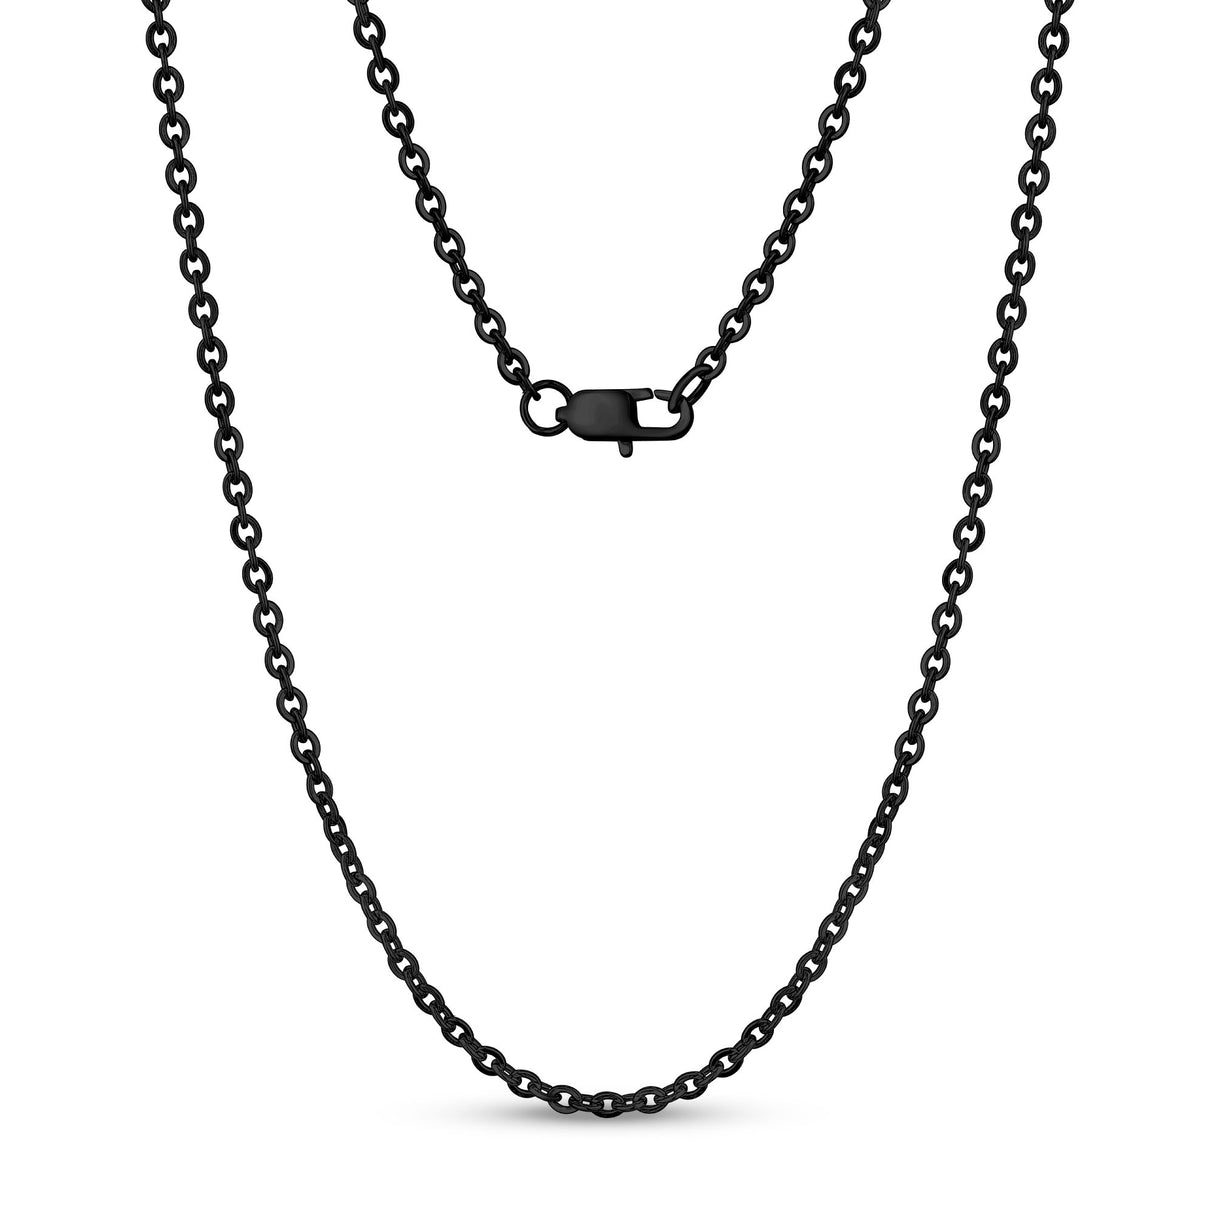 中性項鍊 - 3mm平錨橢圓形鏈黑色鋼鏈項鍊